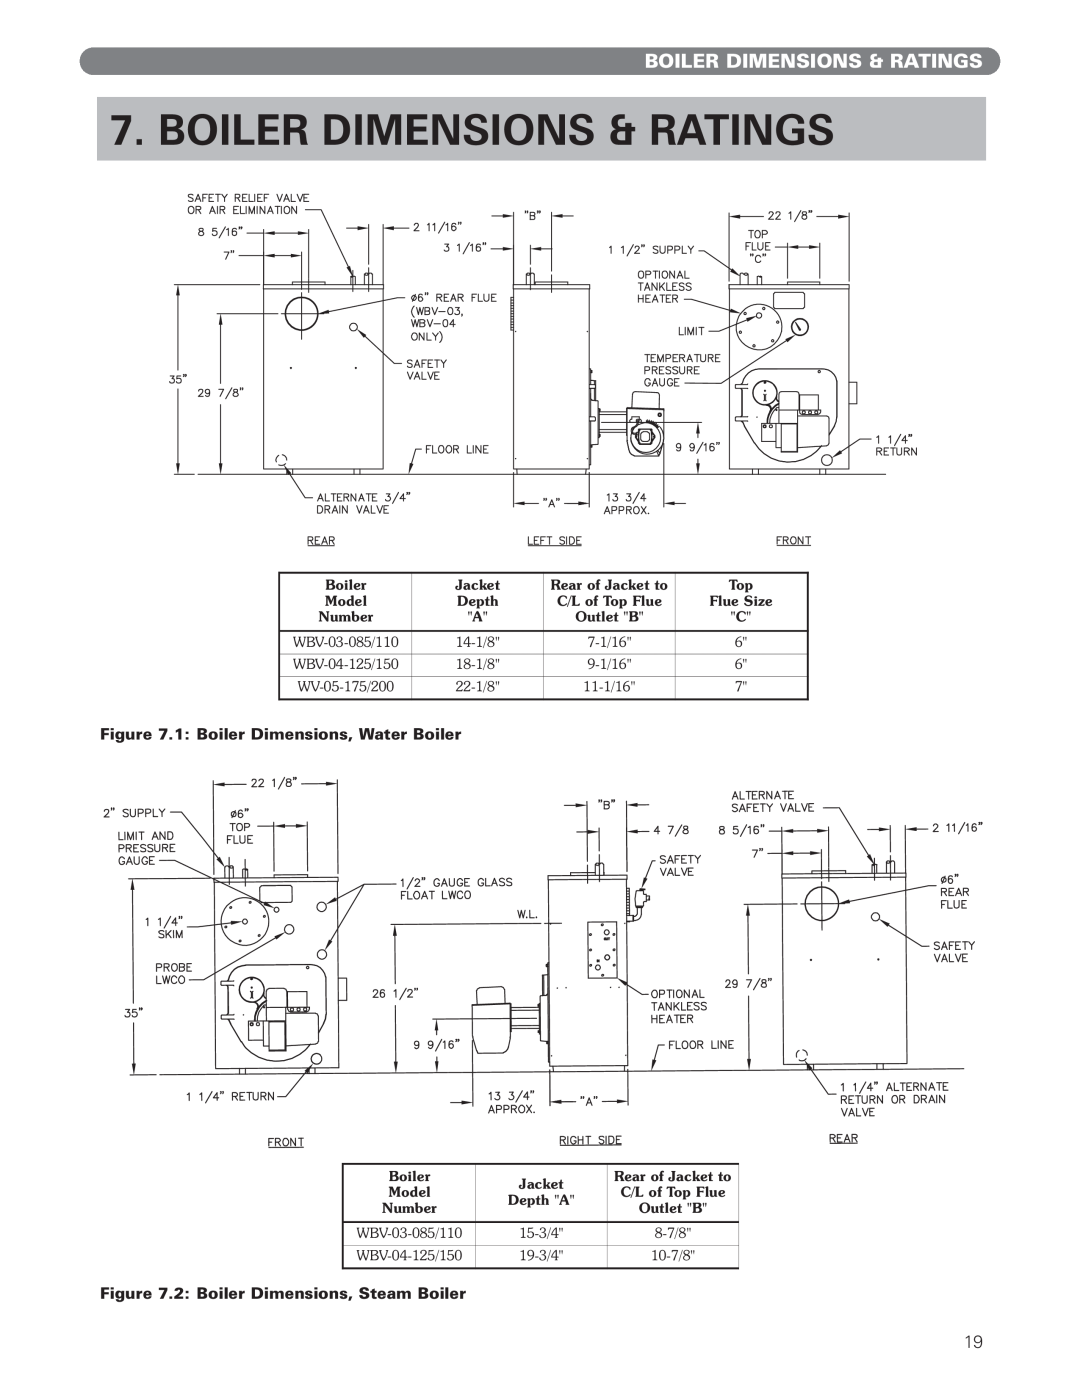 PB Heat WBV Series Boiler Dimensions & Ratings, 1: Boiler Dimensions, Water Boiler, 2: Boiler Dimensions, Steam Boiler 